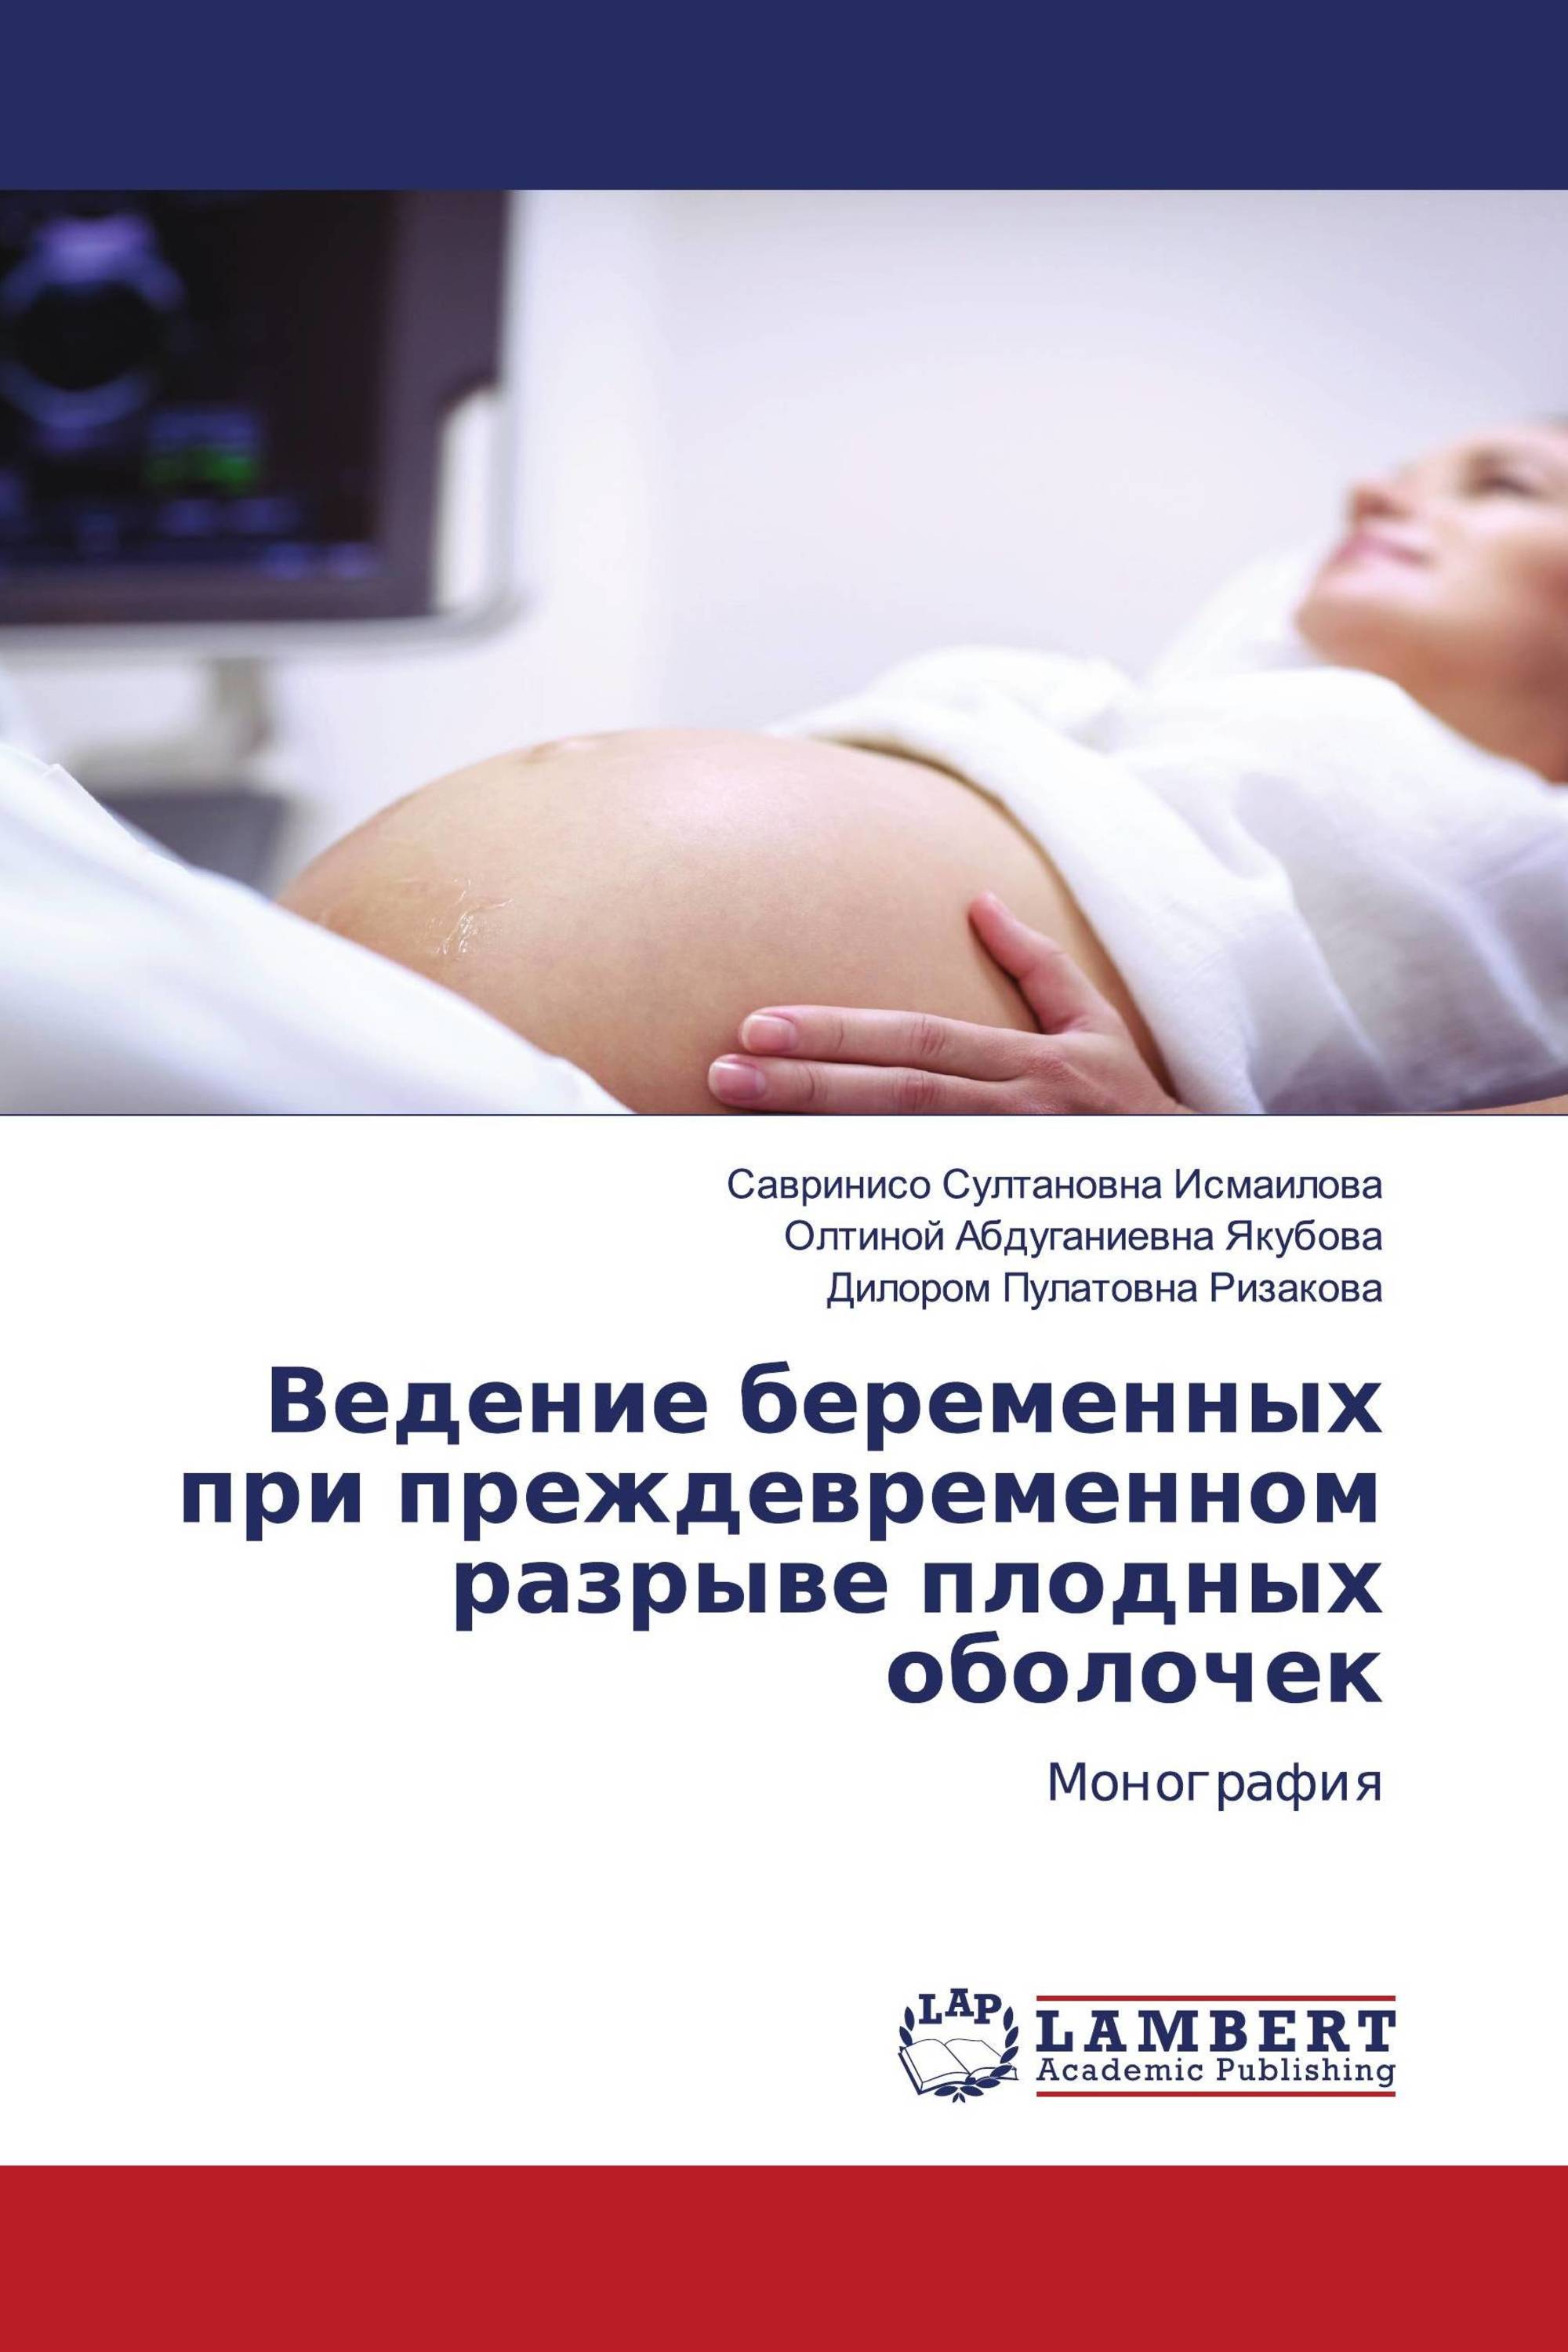 Ведение беременных при преждевременном разрыве плодных оболочек